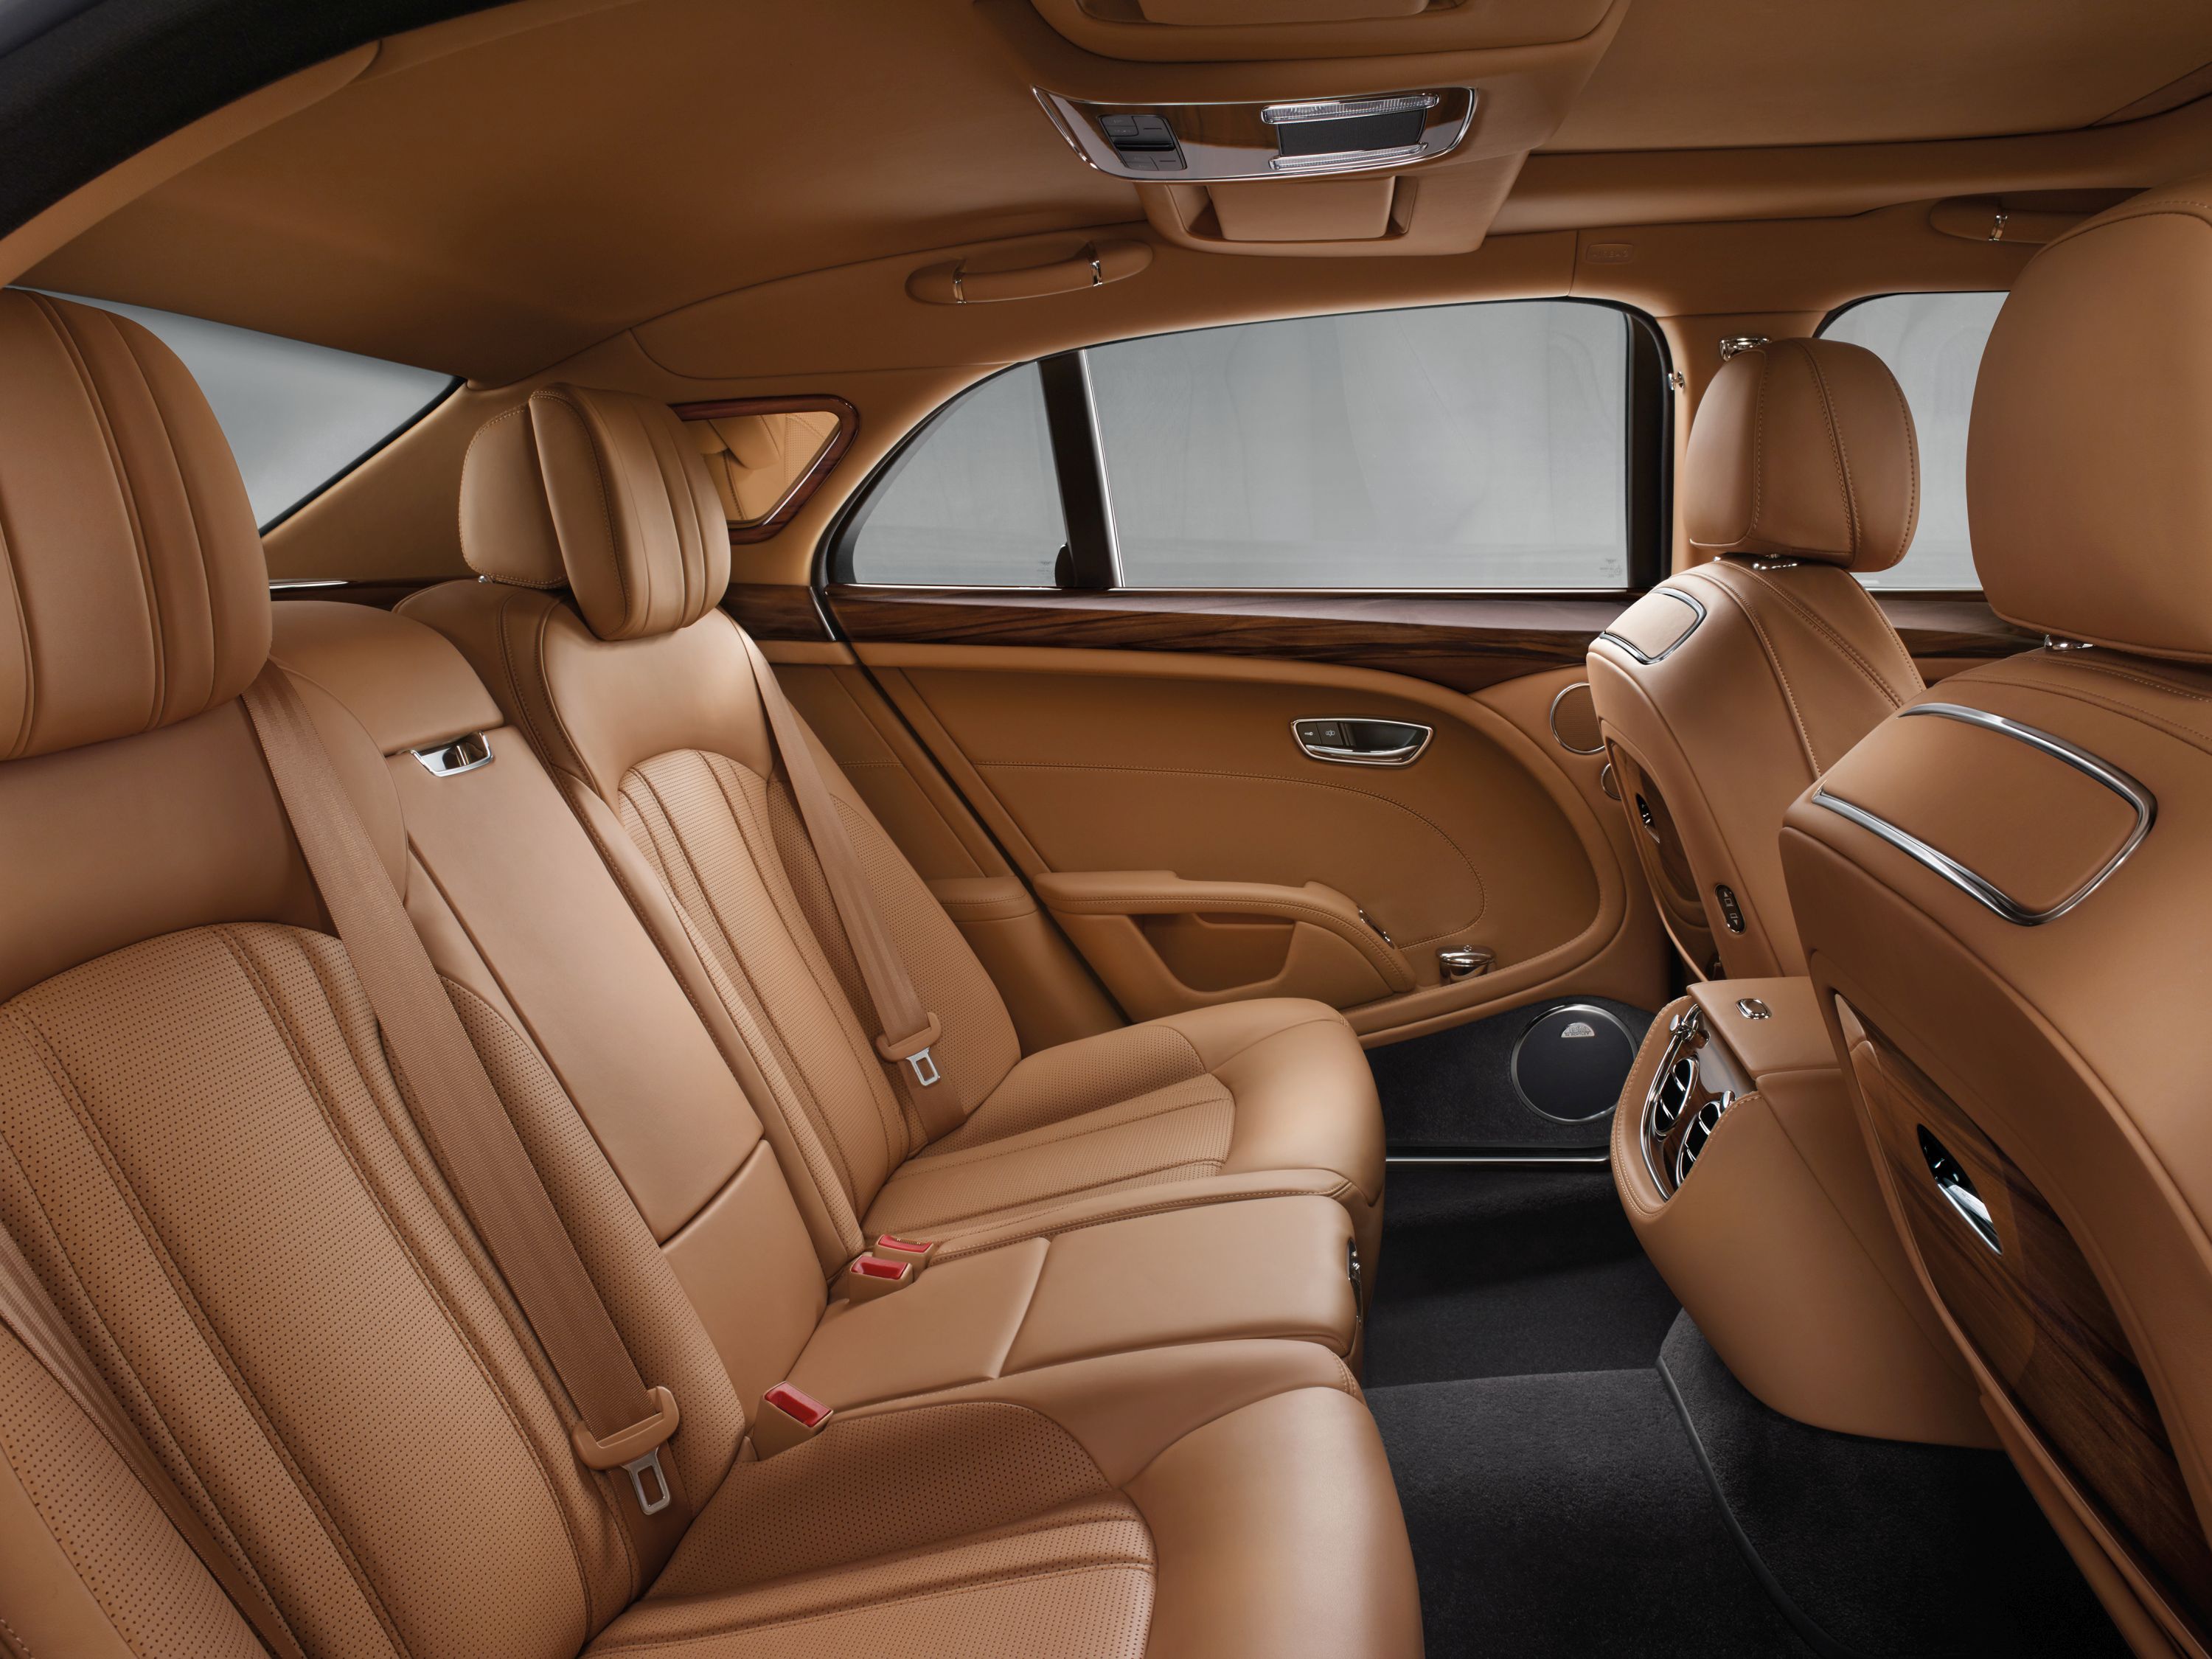 2017 Bentley Mulsanne Interior